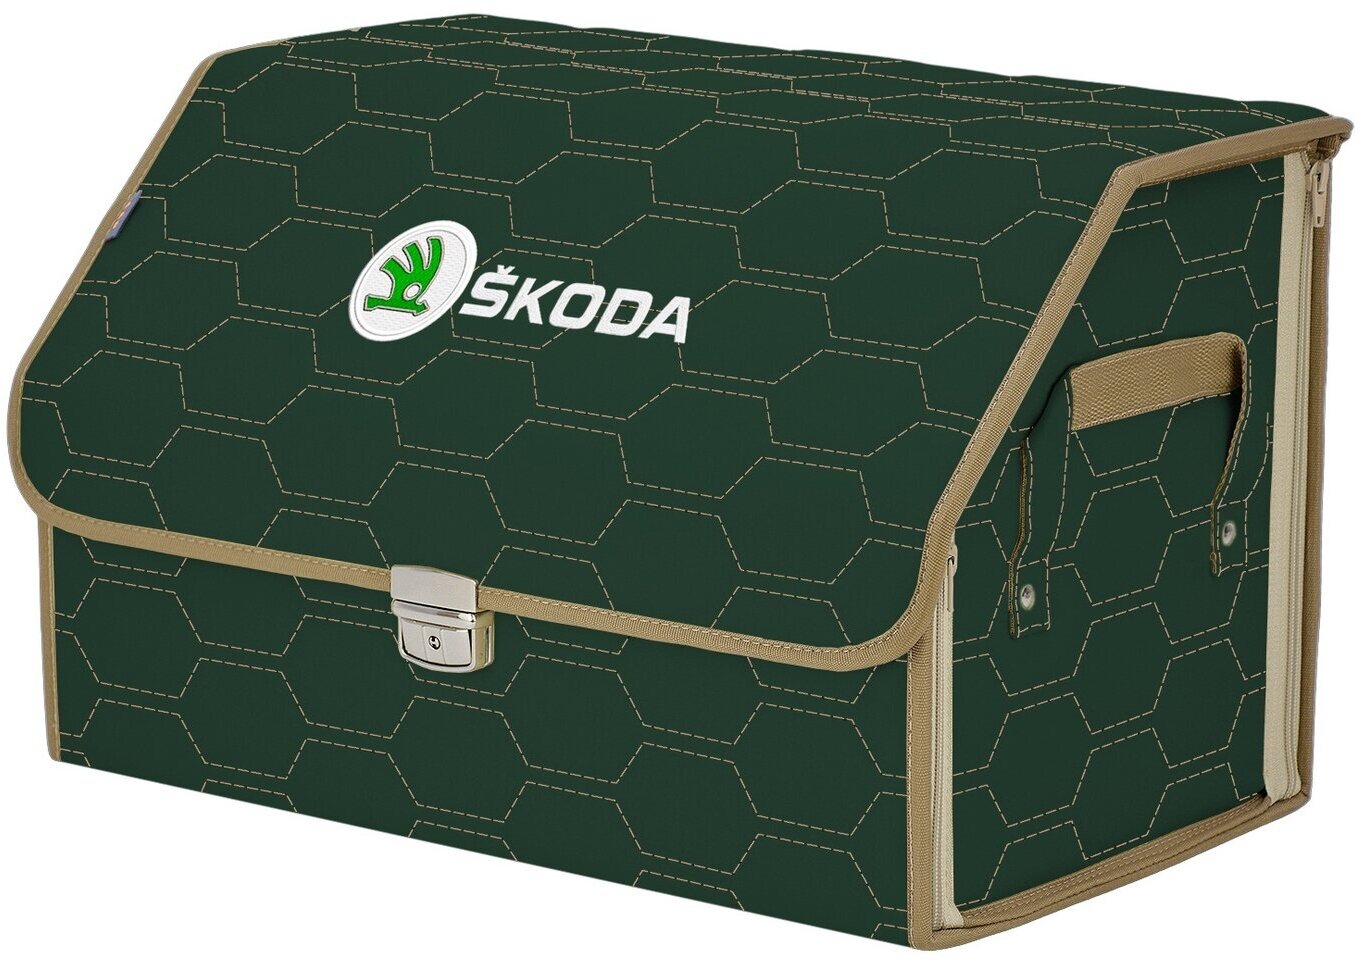 Органайзер-саквояж в багажник "Союз Премиум" (размер L). Цвет: зеленый с бежевой прострочкой Соты и вышивкой Skoda (Шкода).